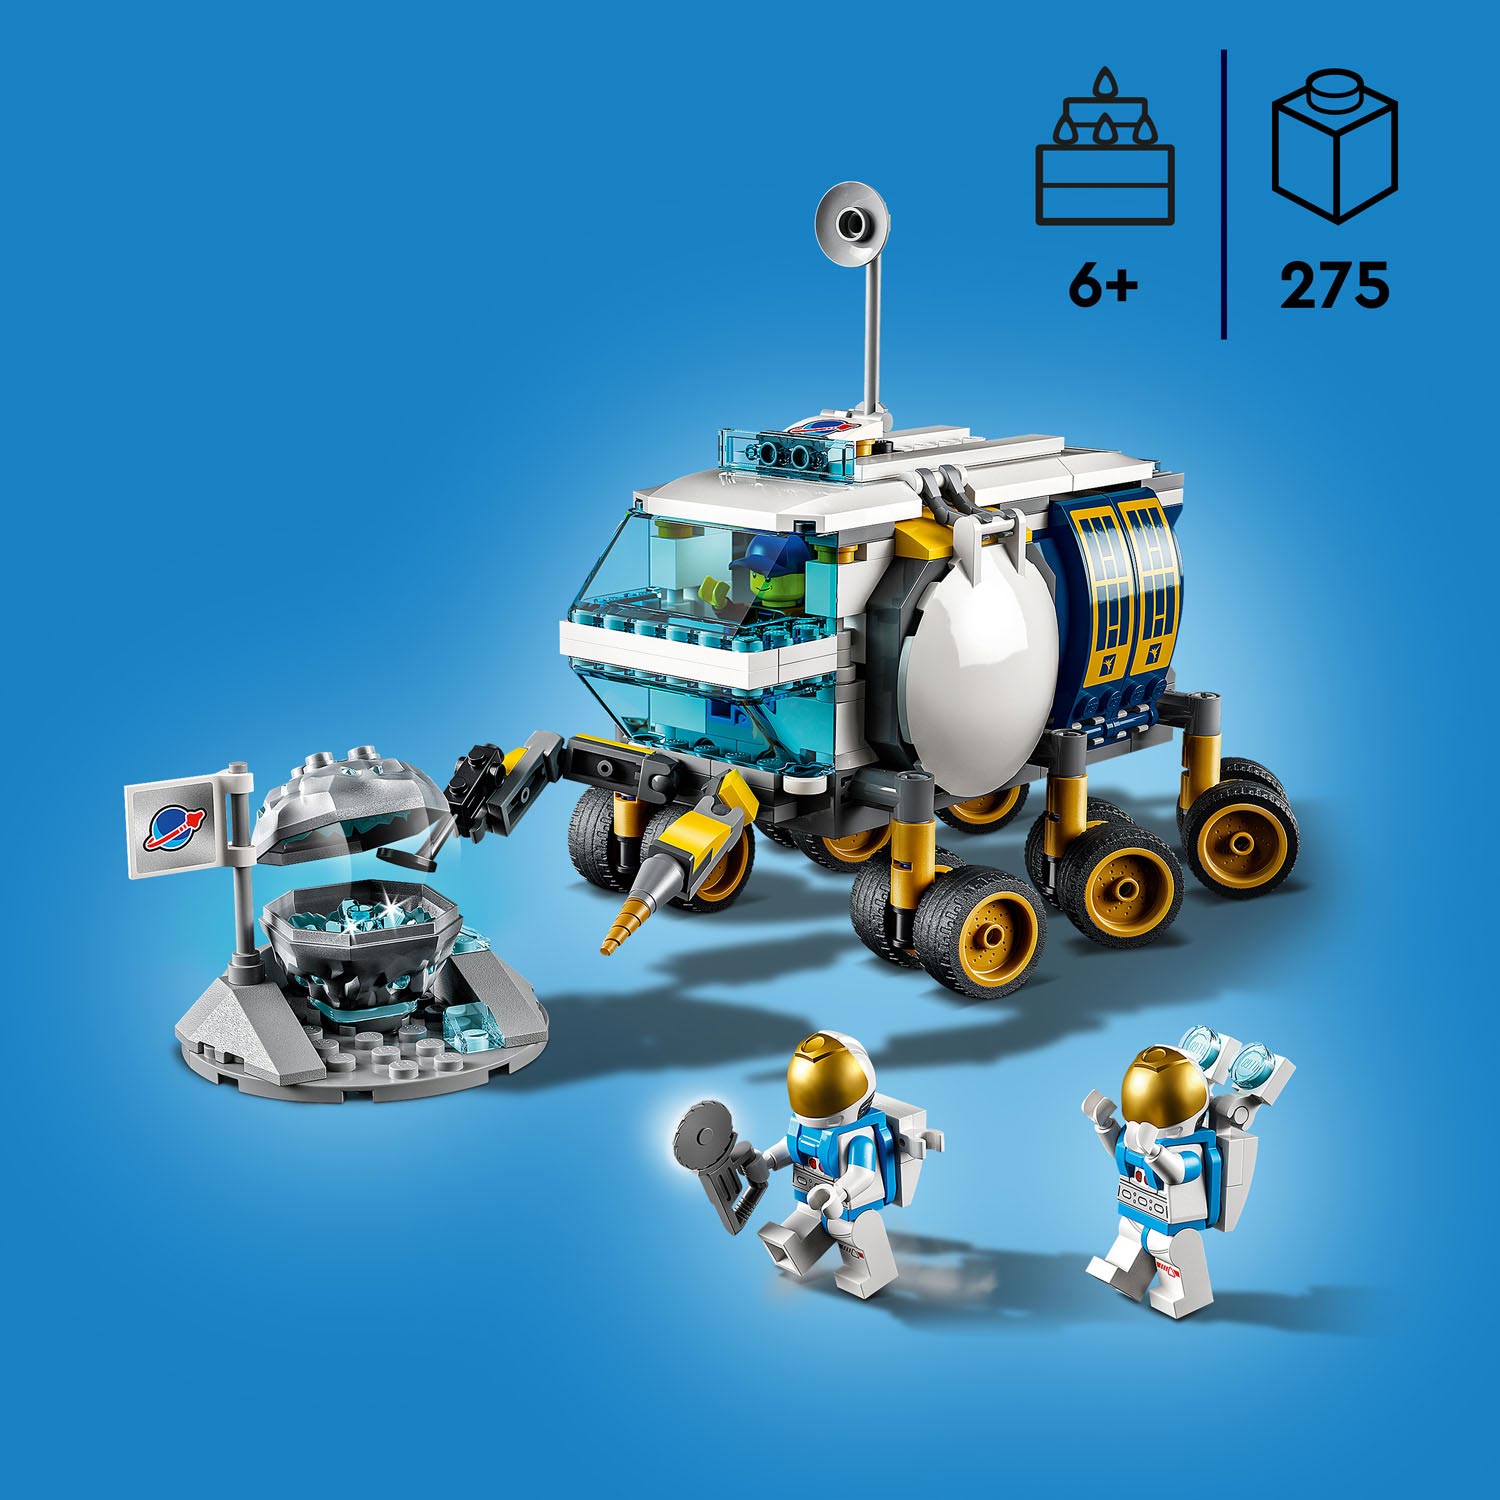 LEGO City Space Port 60348 Maanwagen